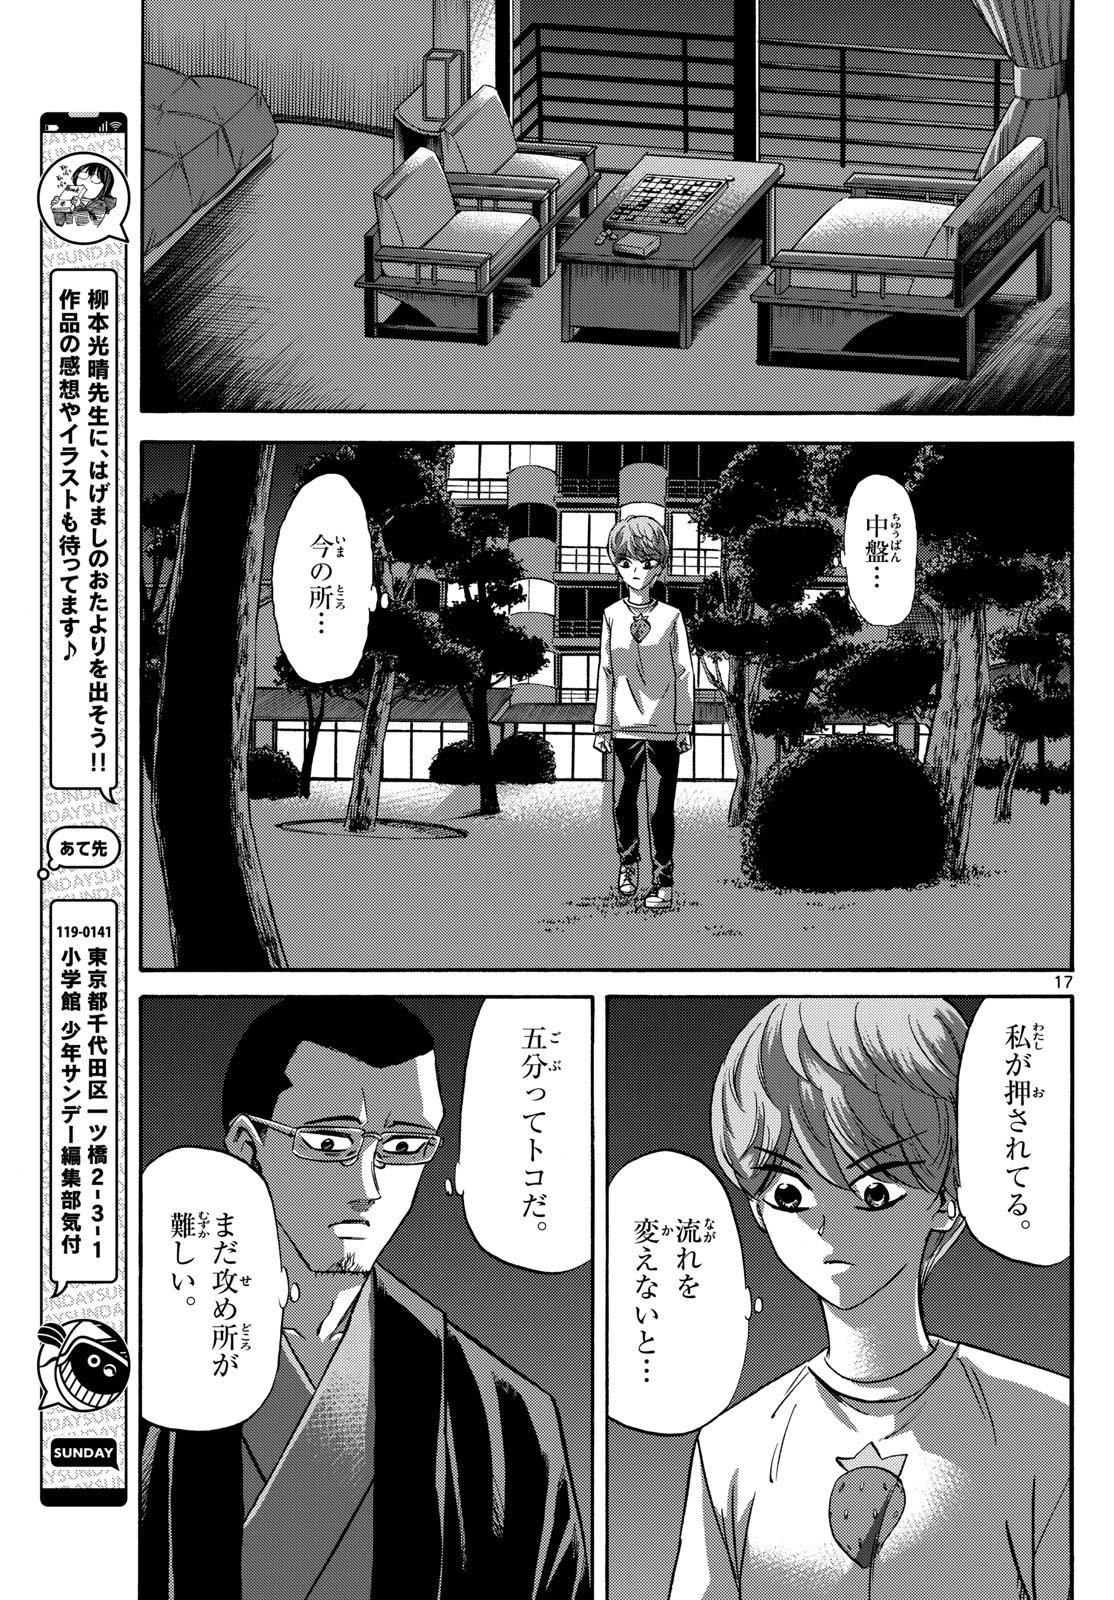 Ryu-to-Ichigo - Chapter 162 - Page 17